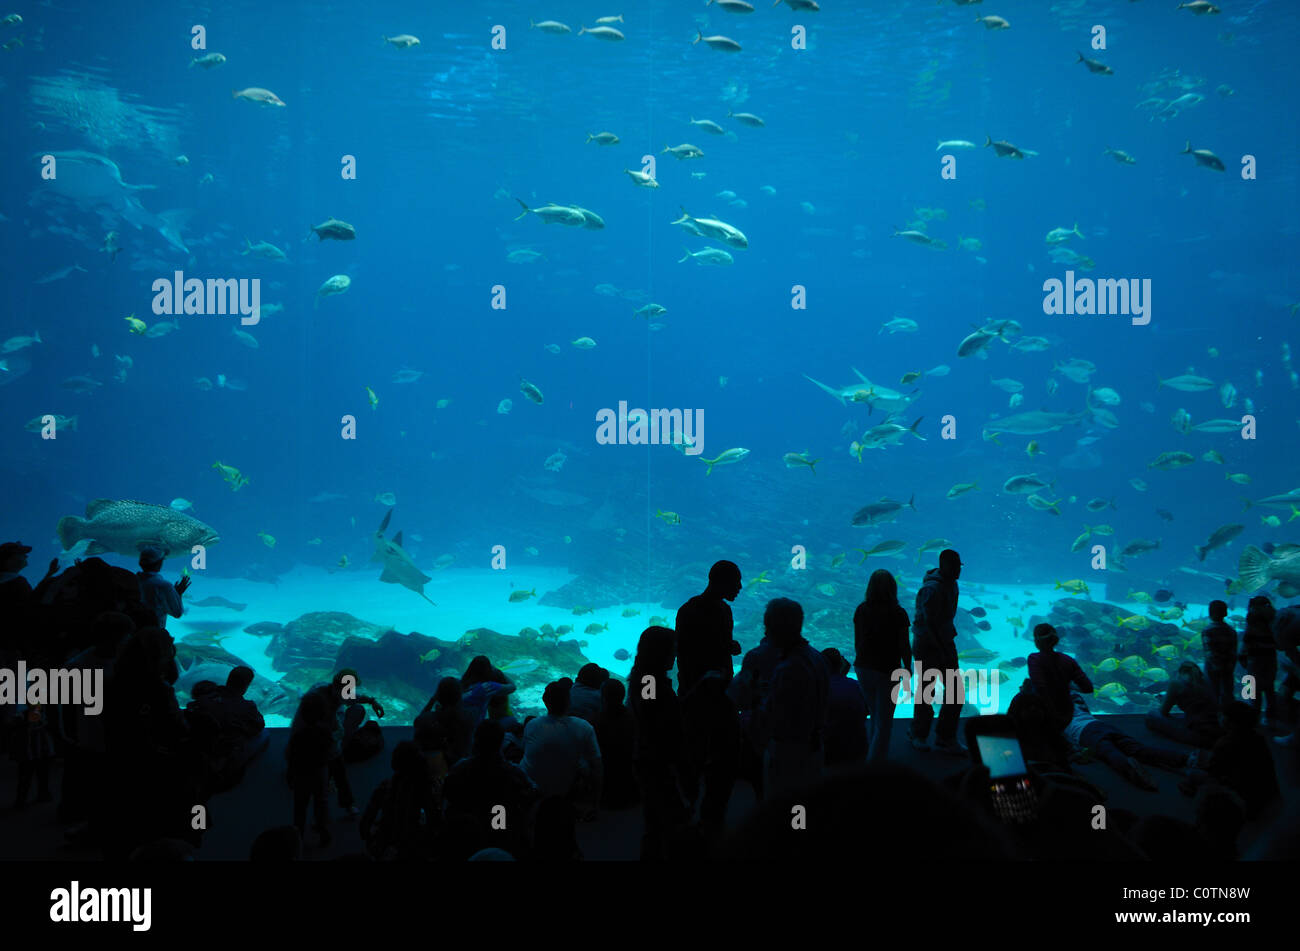 The Georgia Aquarium, the world's largest aquarium, in Atlanta, Georgia Stock Photo